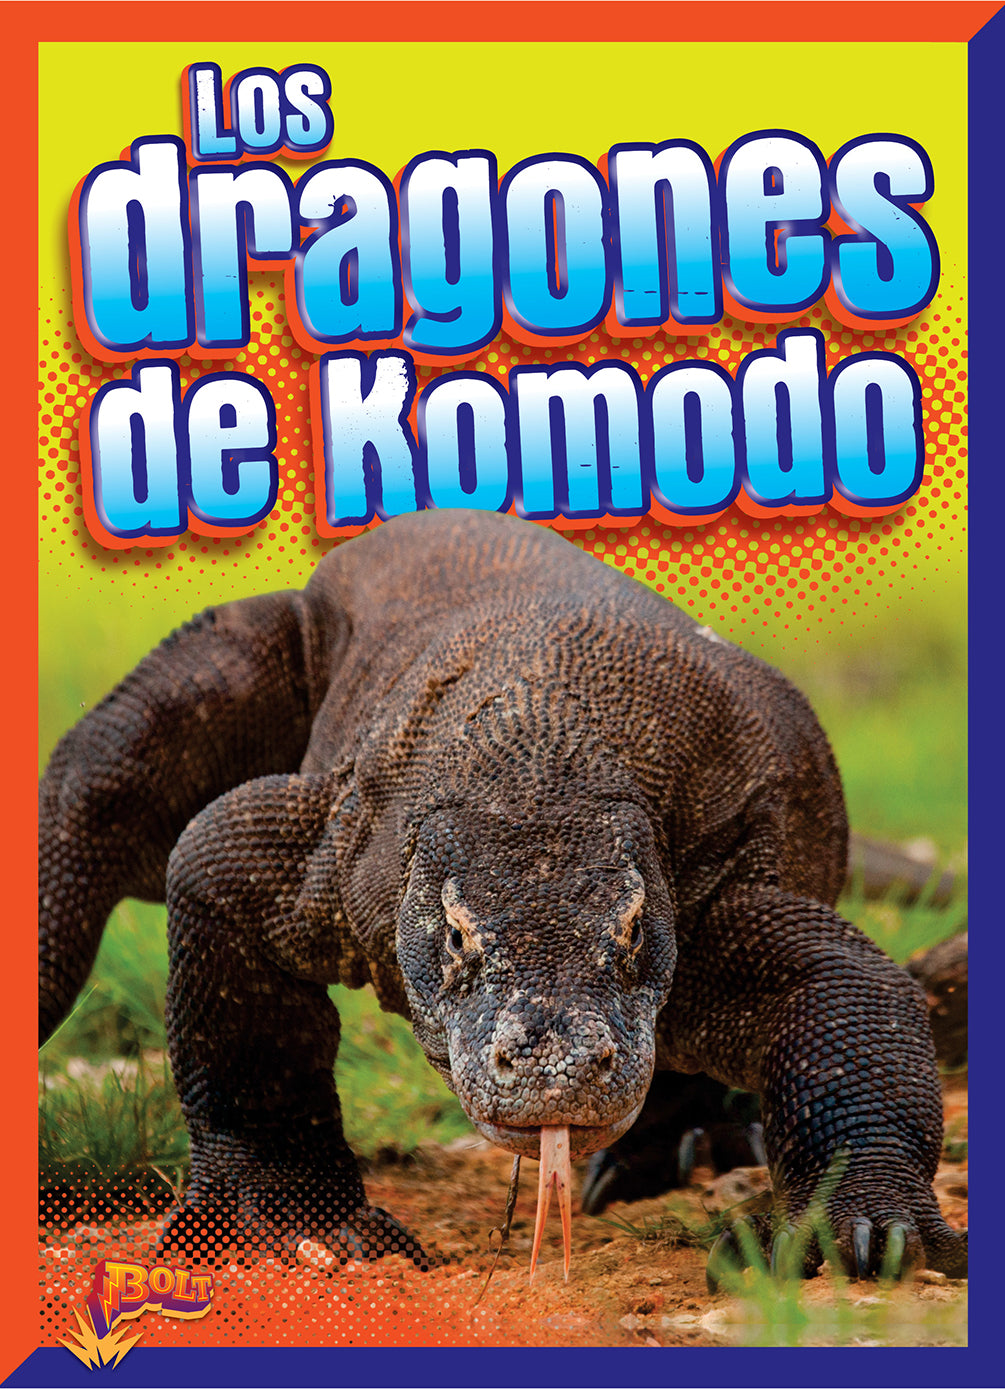 Aventuras reptilianas: Los dragones de Komodo